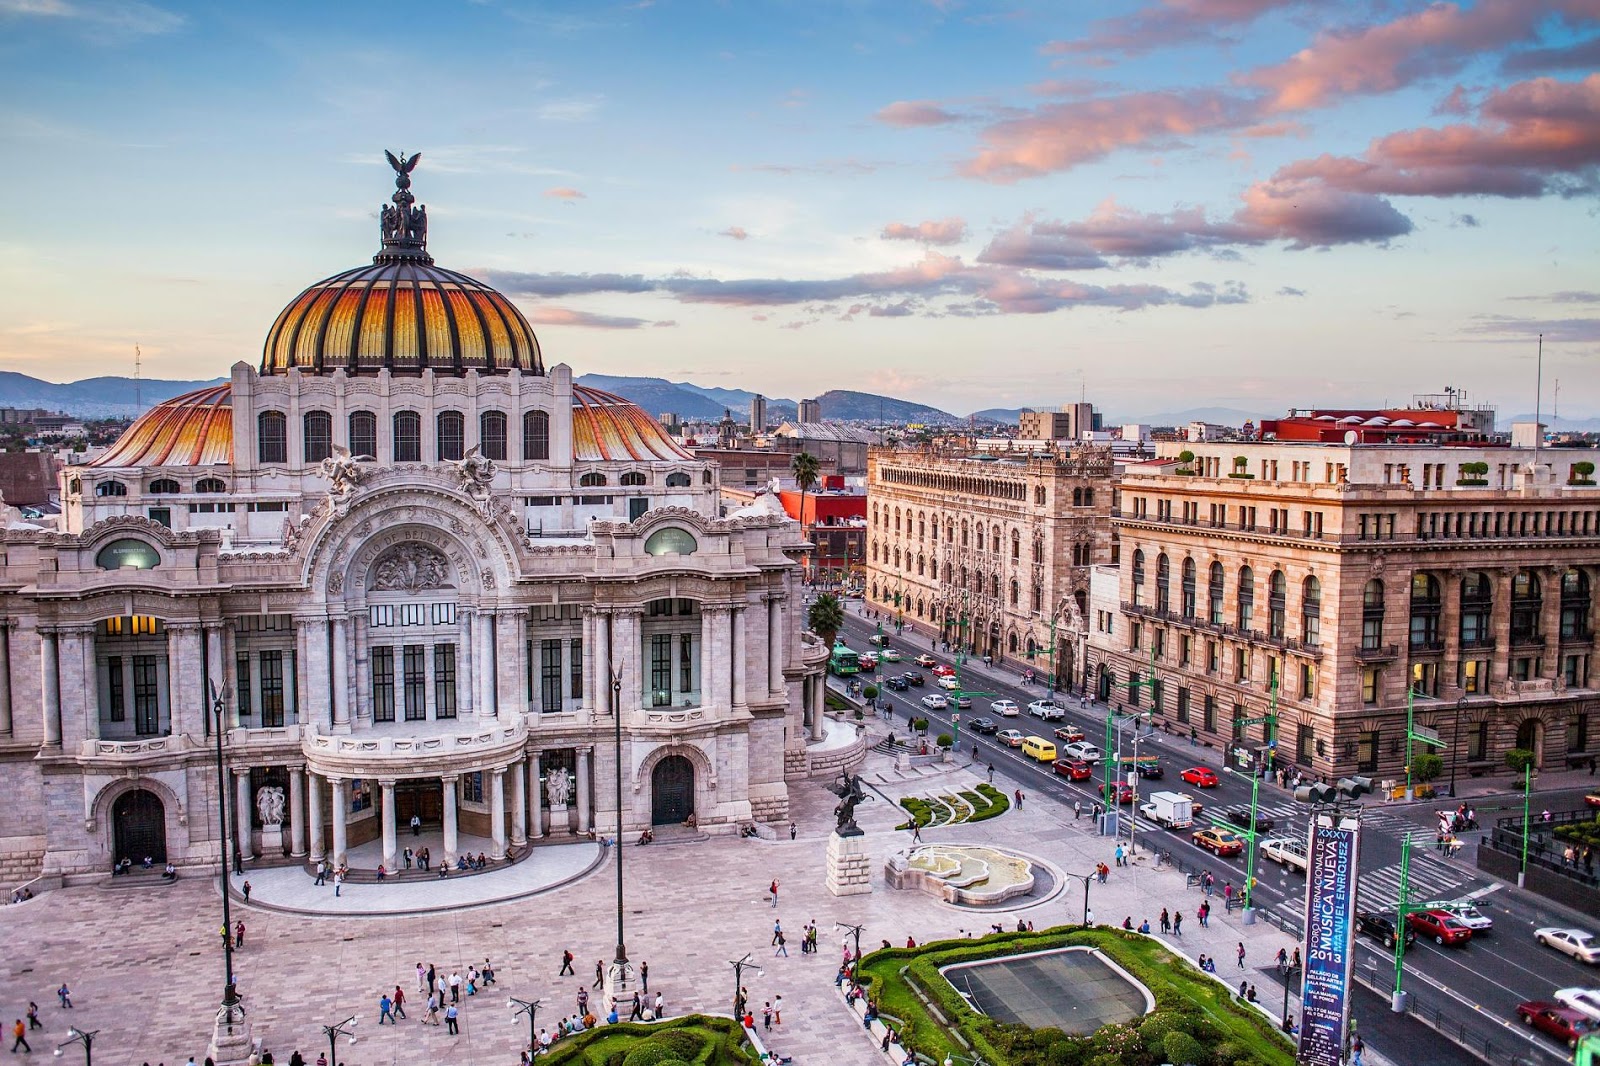 السياحة في المكسيك وأهم المدن التاريخية ووسائل المواصلات وأفضل أوقات السفر